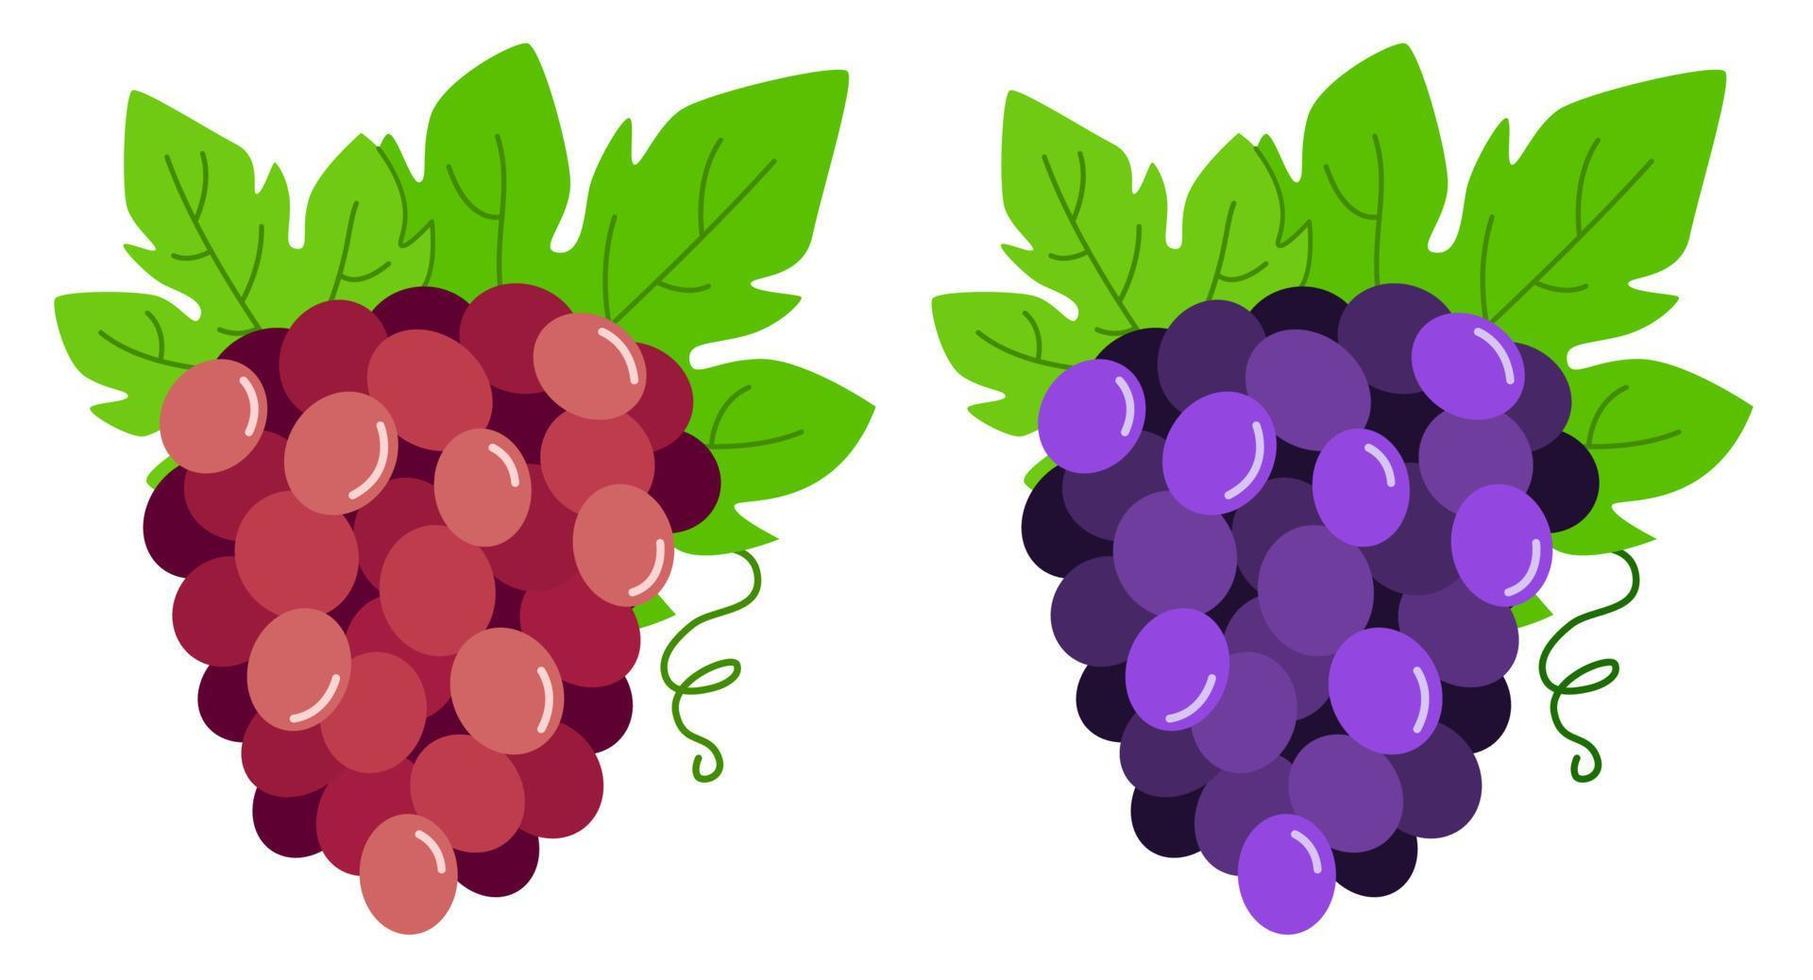 Bündel von violetten und roten Trauben. vektorillustration von trauben mit blättern. vektor